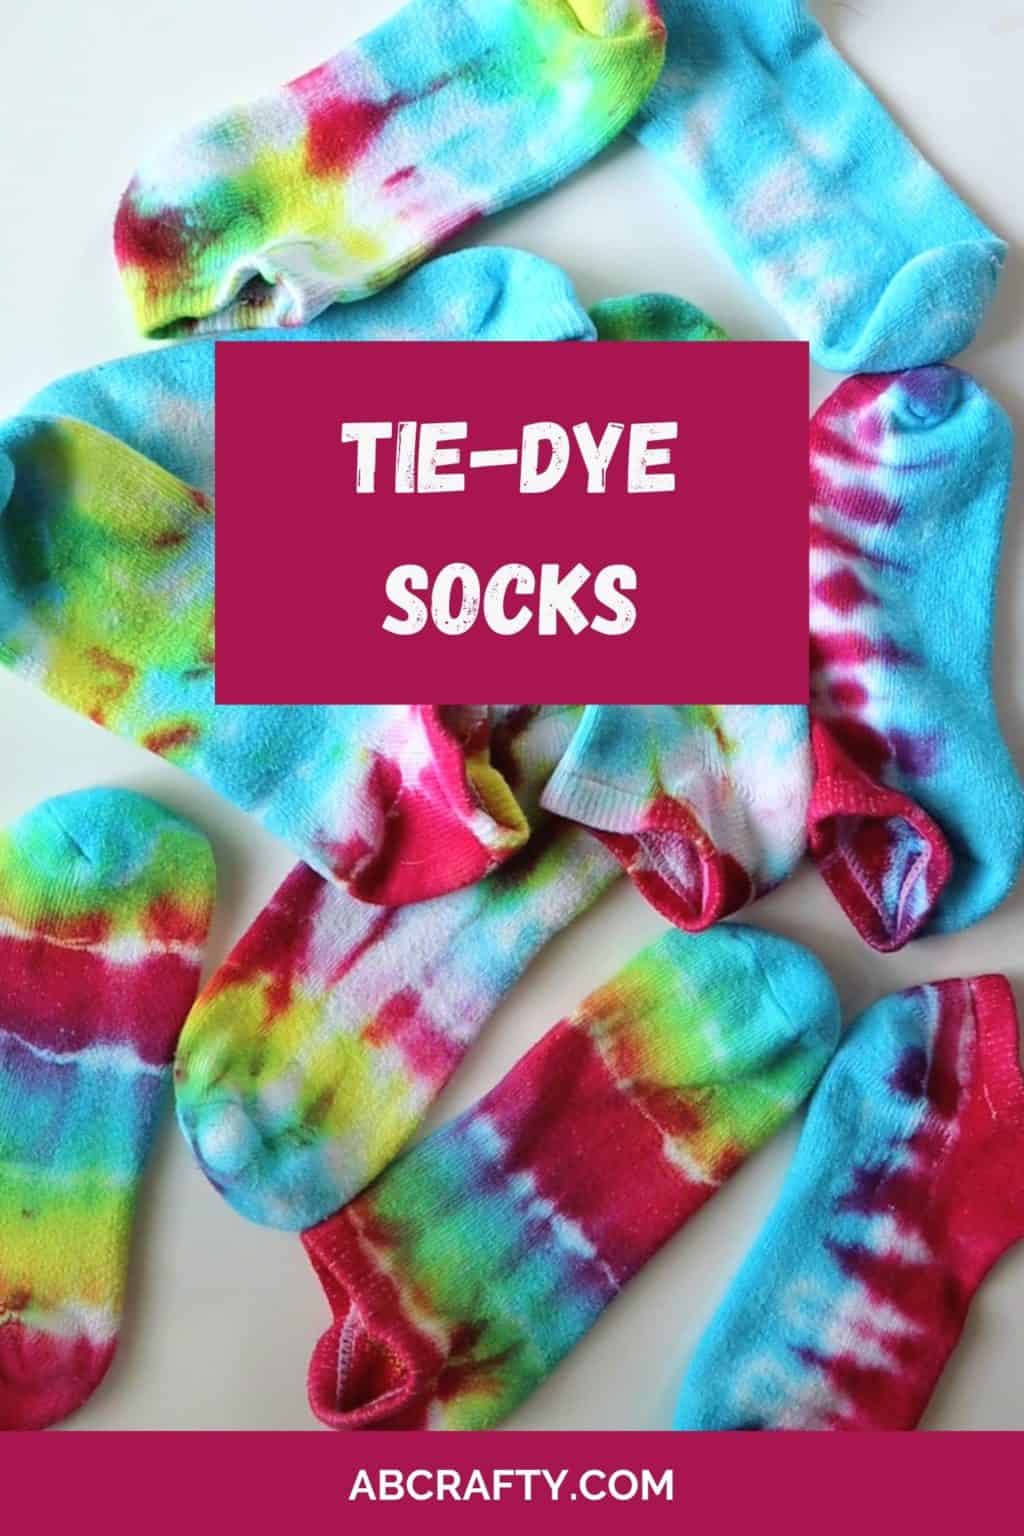 How To Wear Tie-Dye Socks